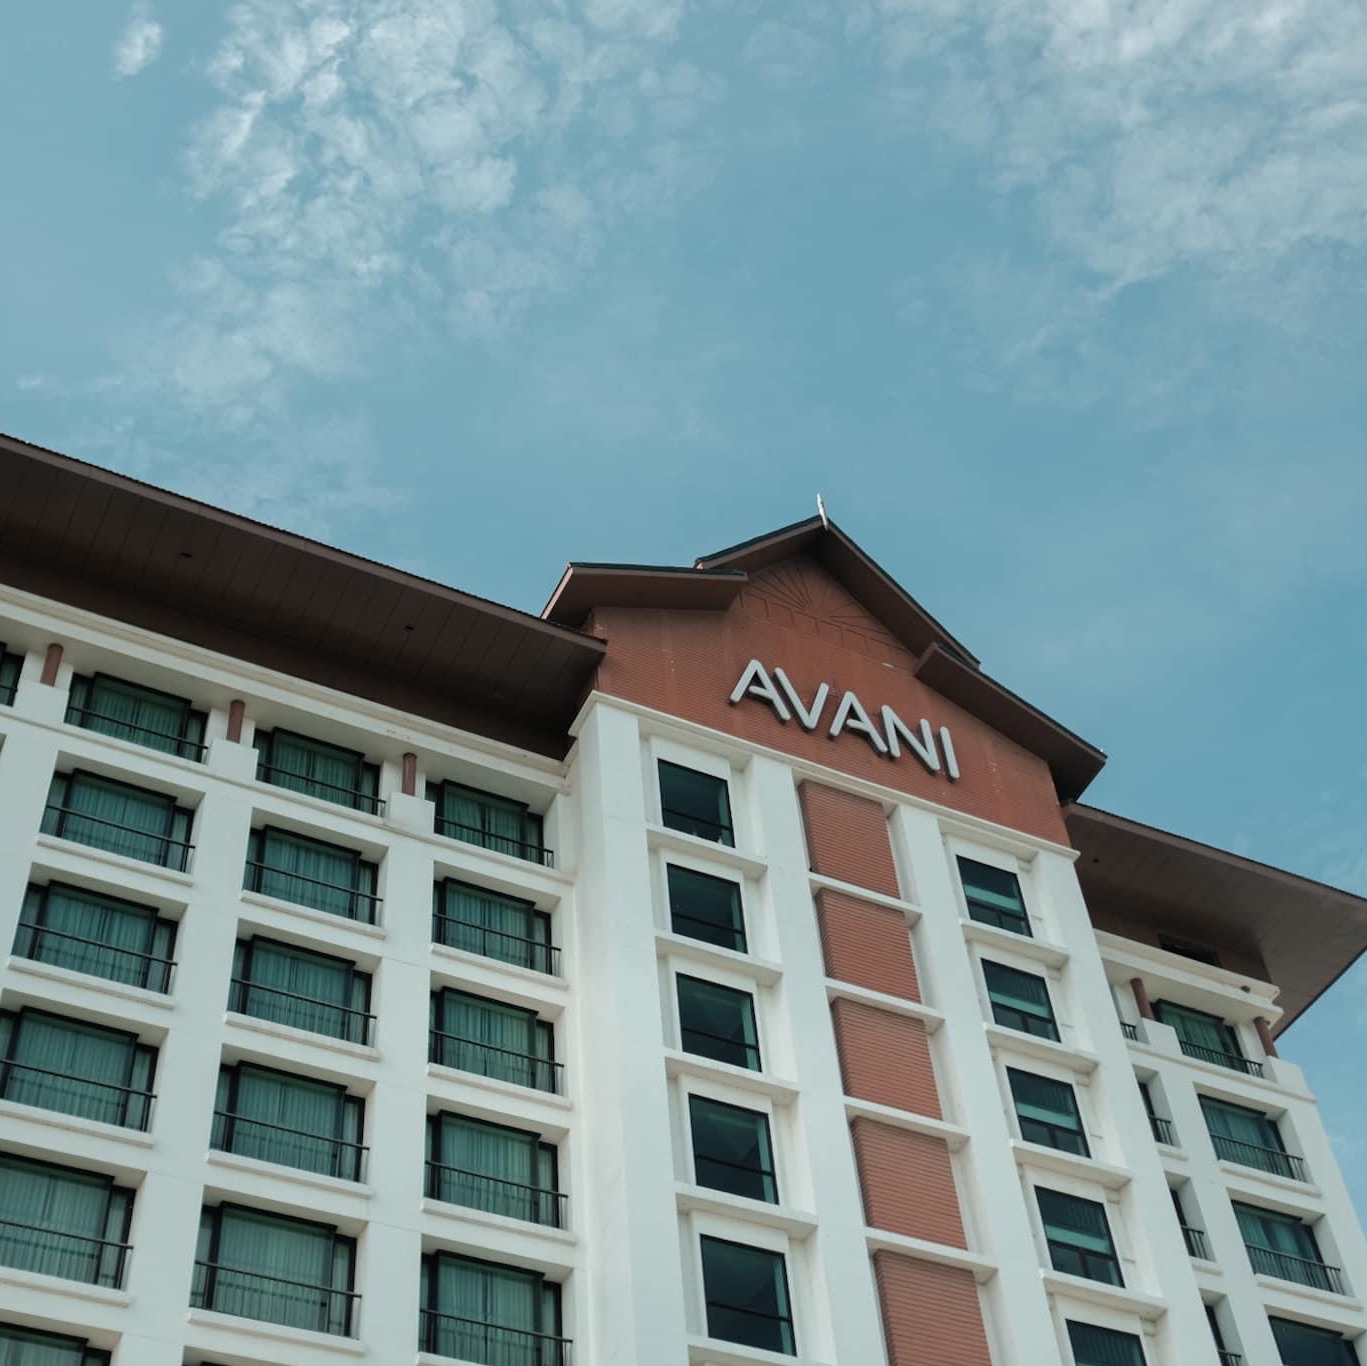 孔敬有一家美丽的酒店,Avani不可避免。